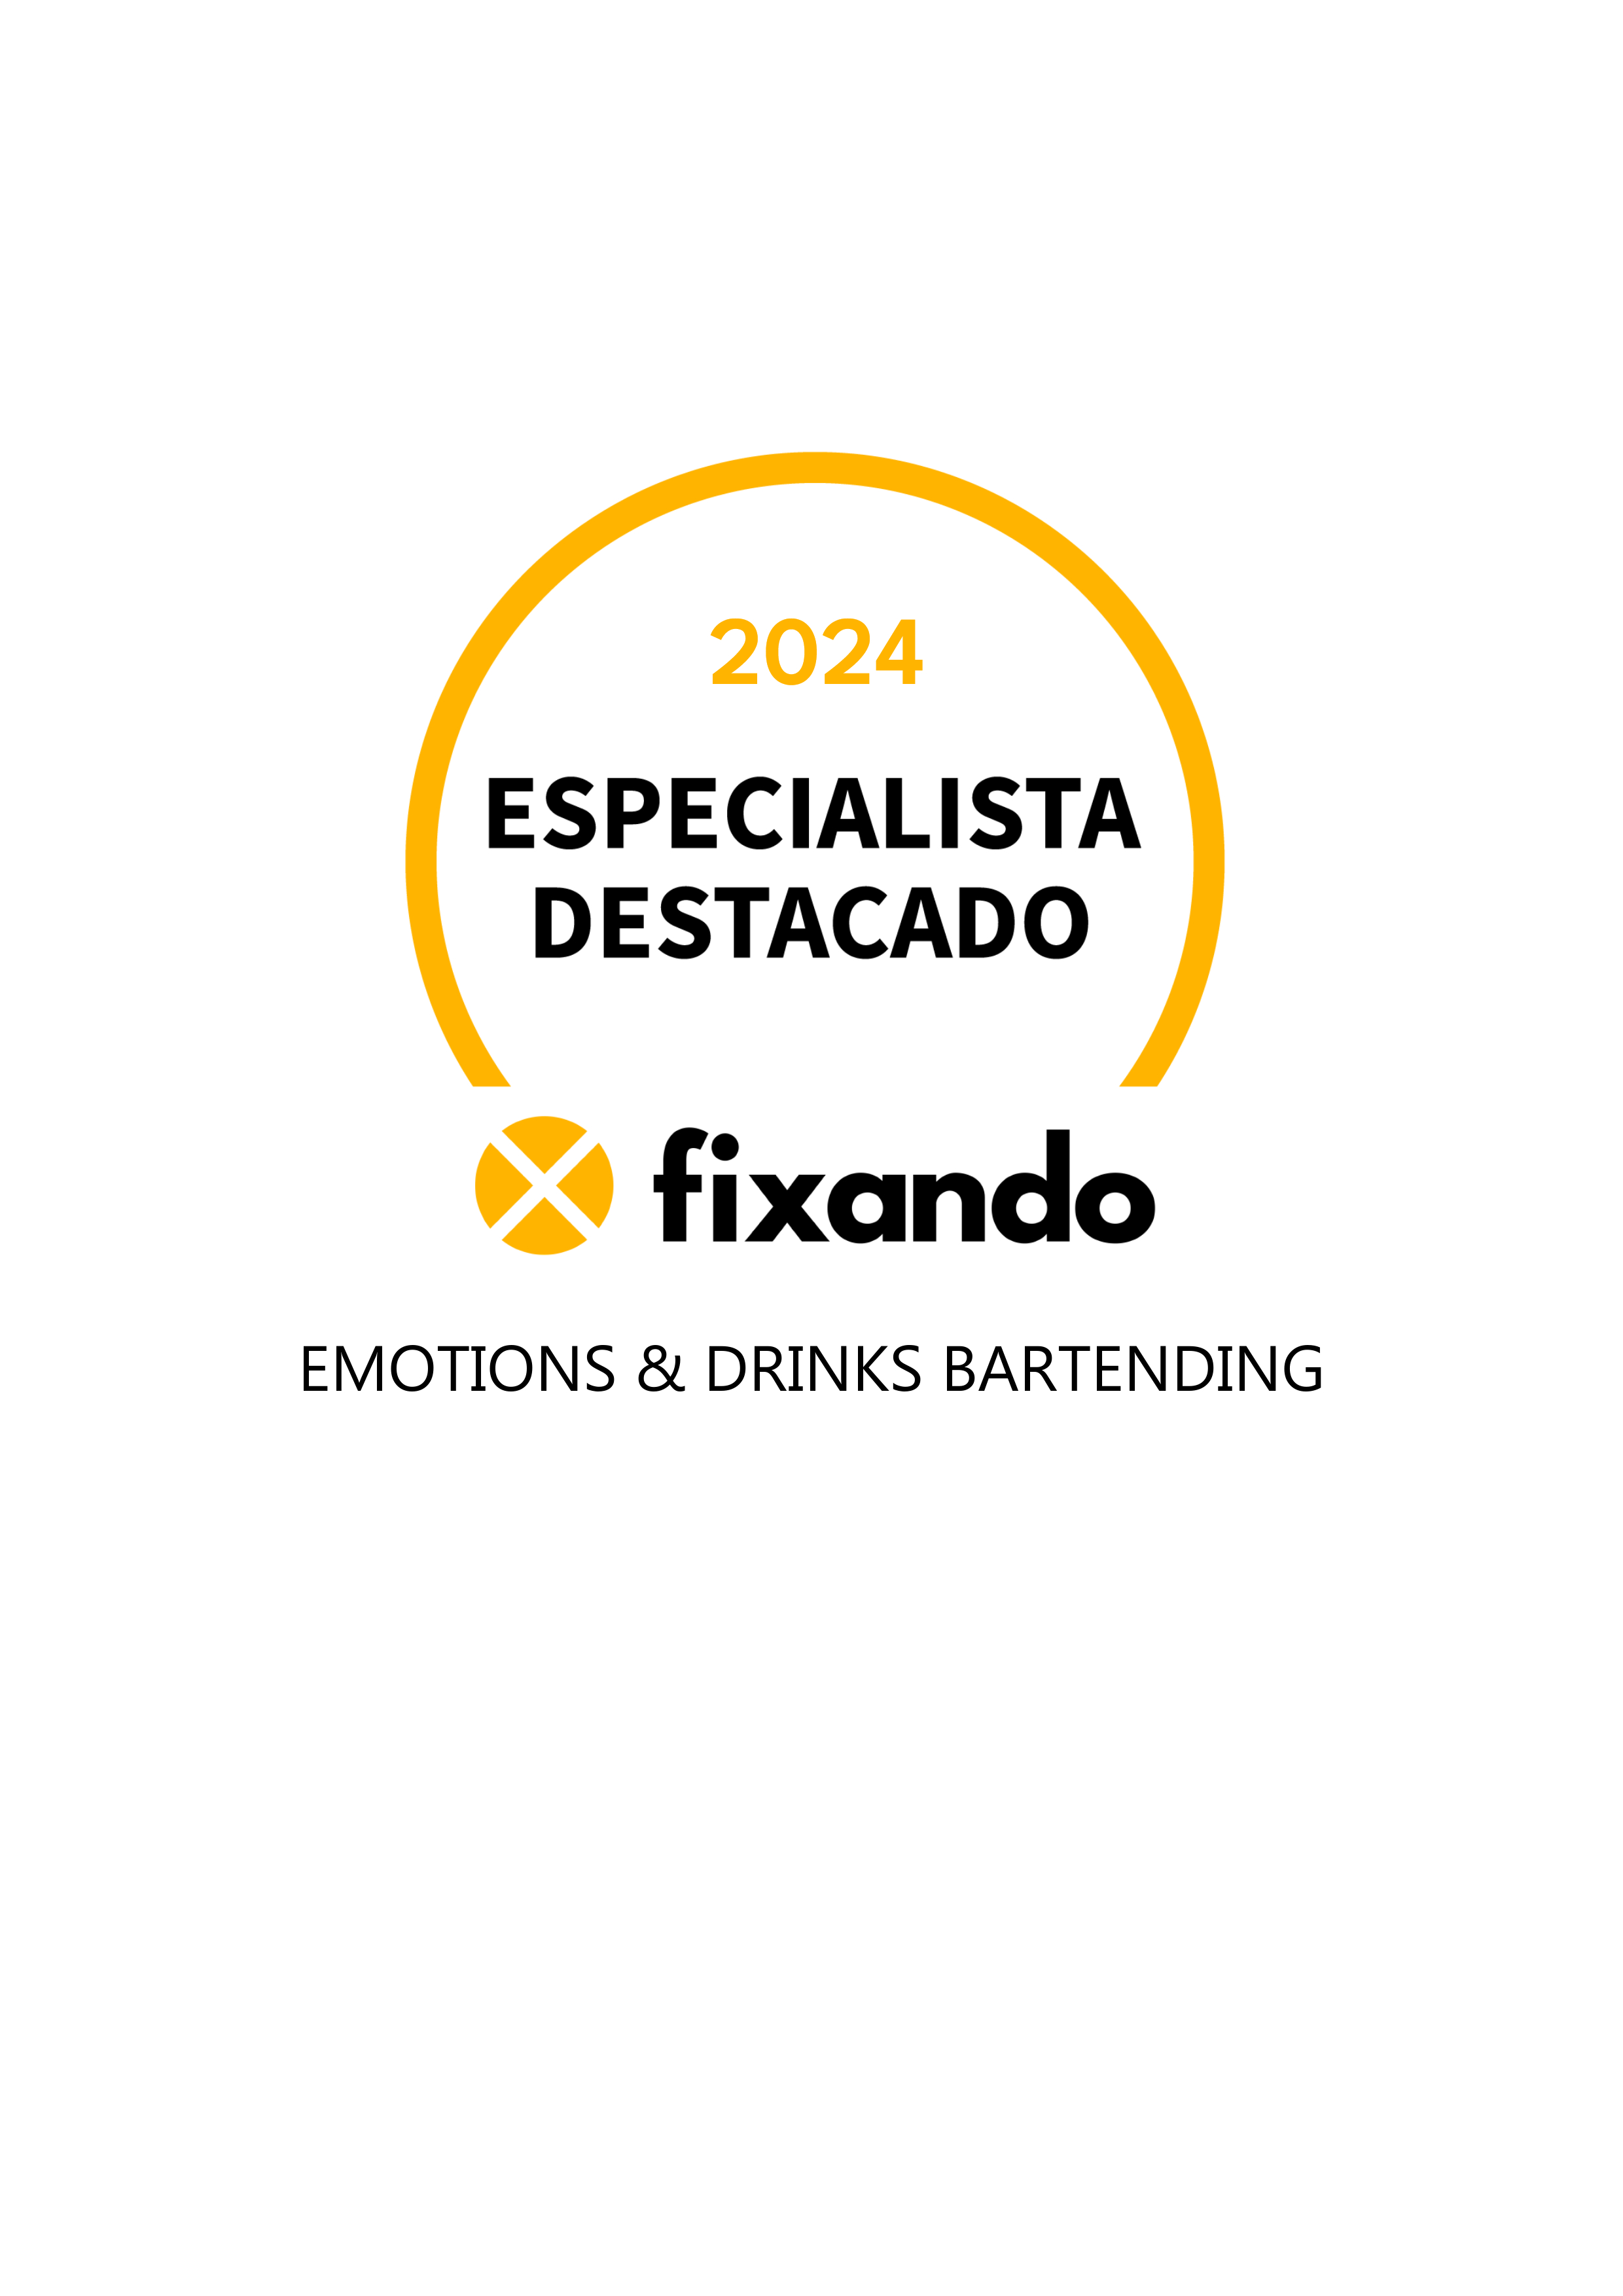 Emotions & drinks bartending - Barcelos - Serviço de Barman